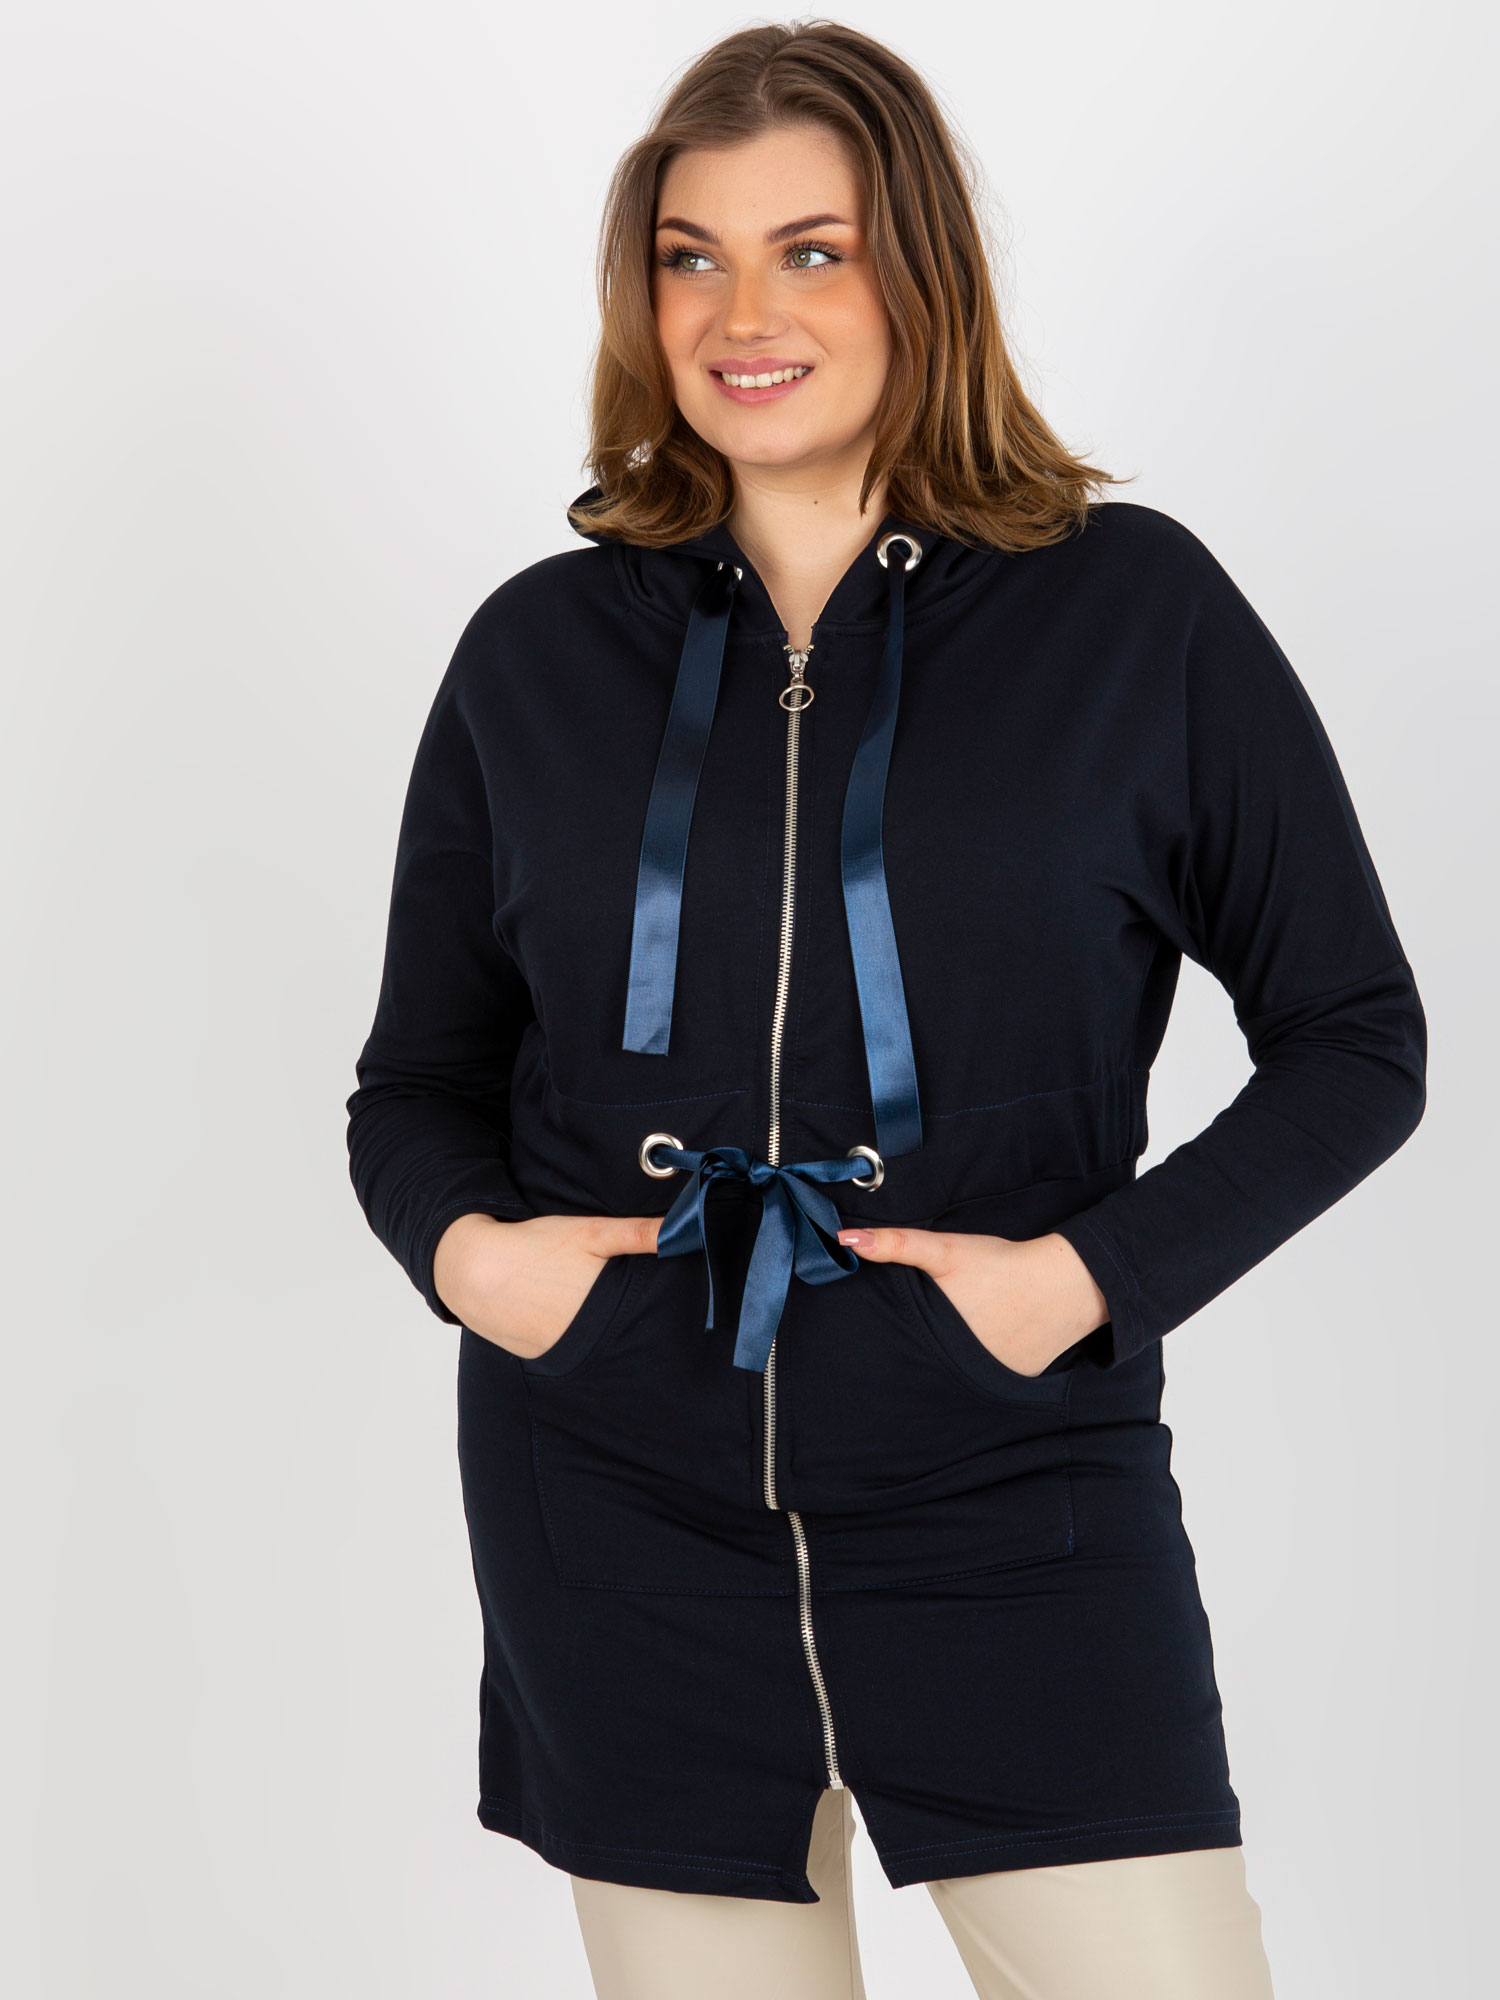 Long hoodie with dark blue zipper